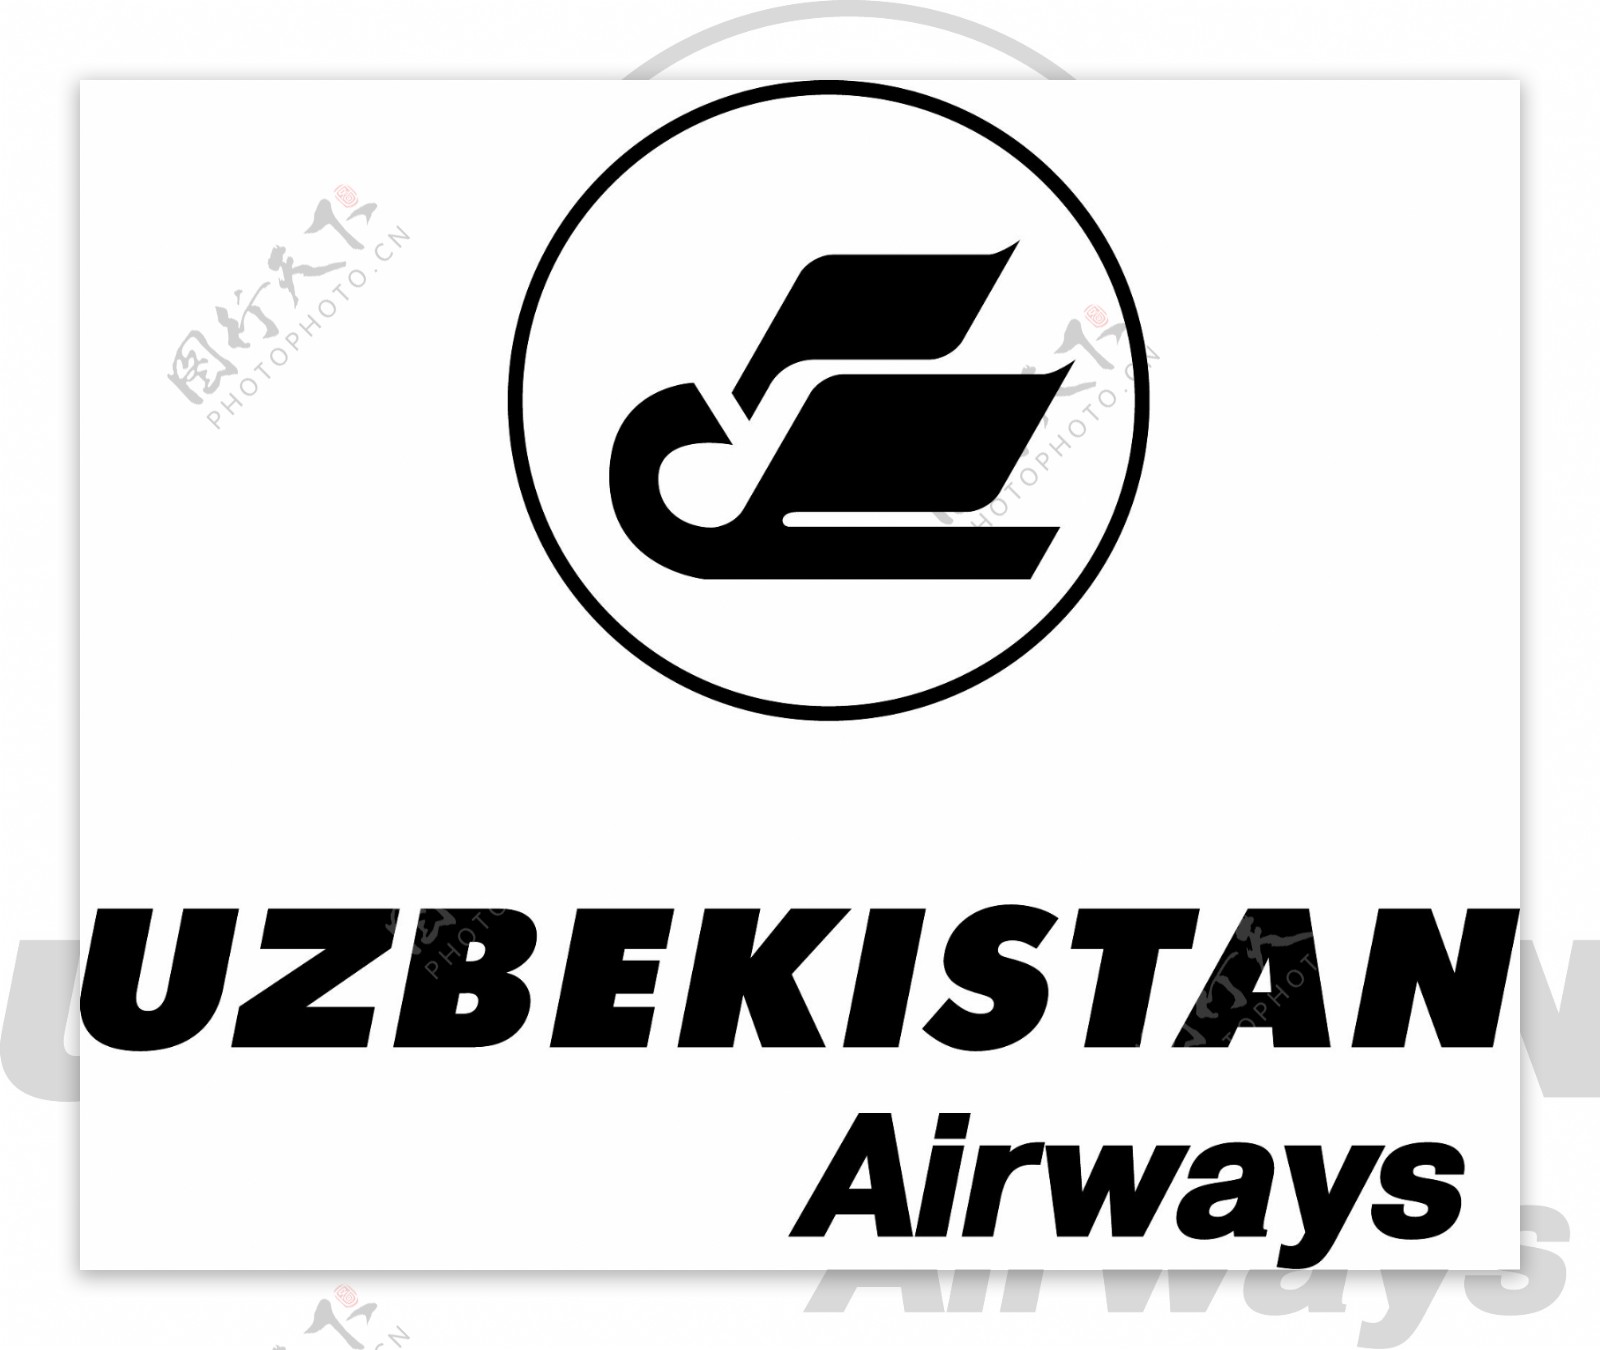 乌兹别克斯坦航空公司标志